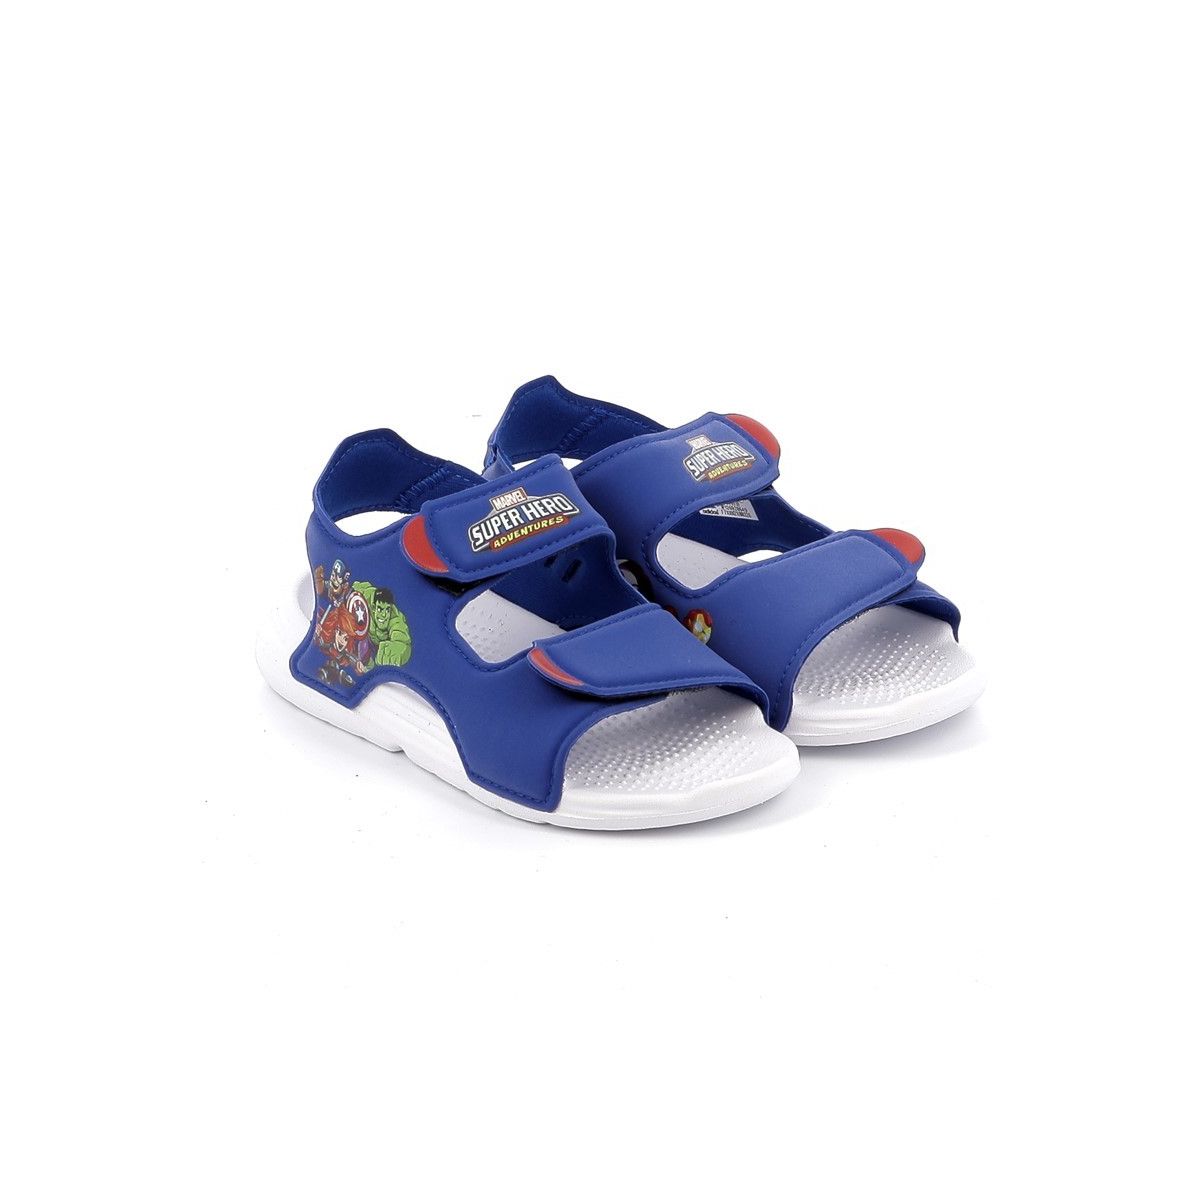 Παιδικό Πέδιλο Θαλάσσης για Αγόρι Adidas Swim Sandals Χρώματος Μπλε FY8938